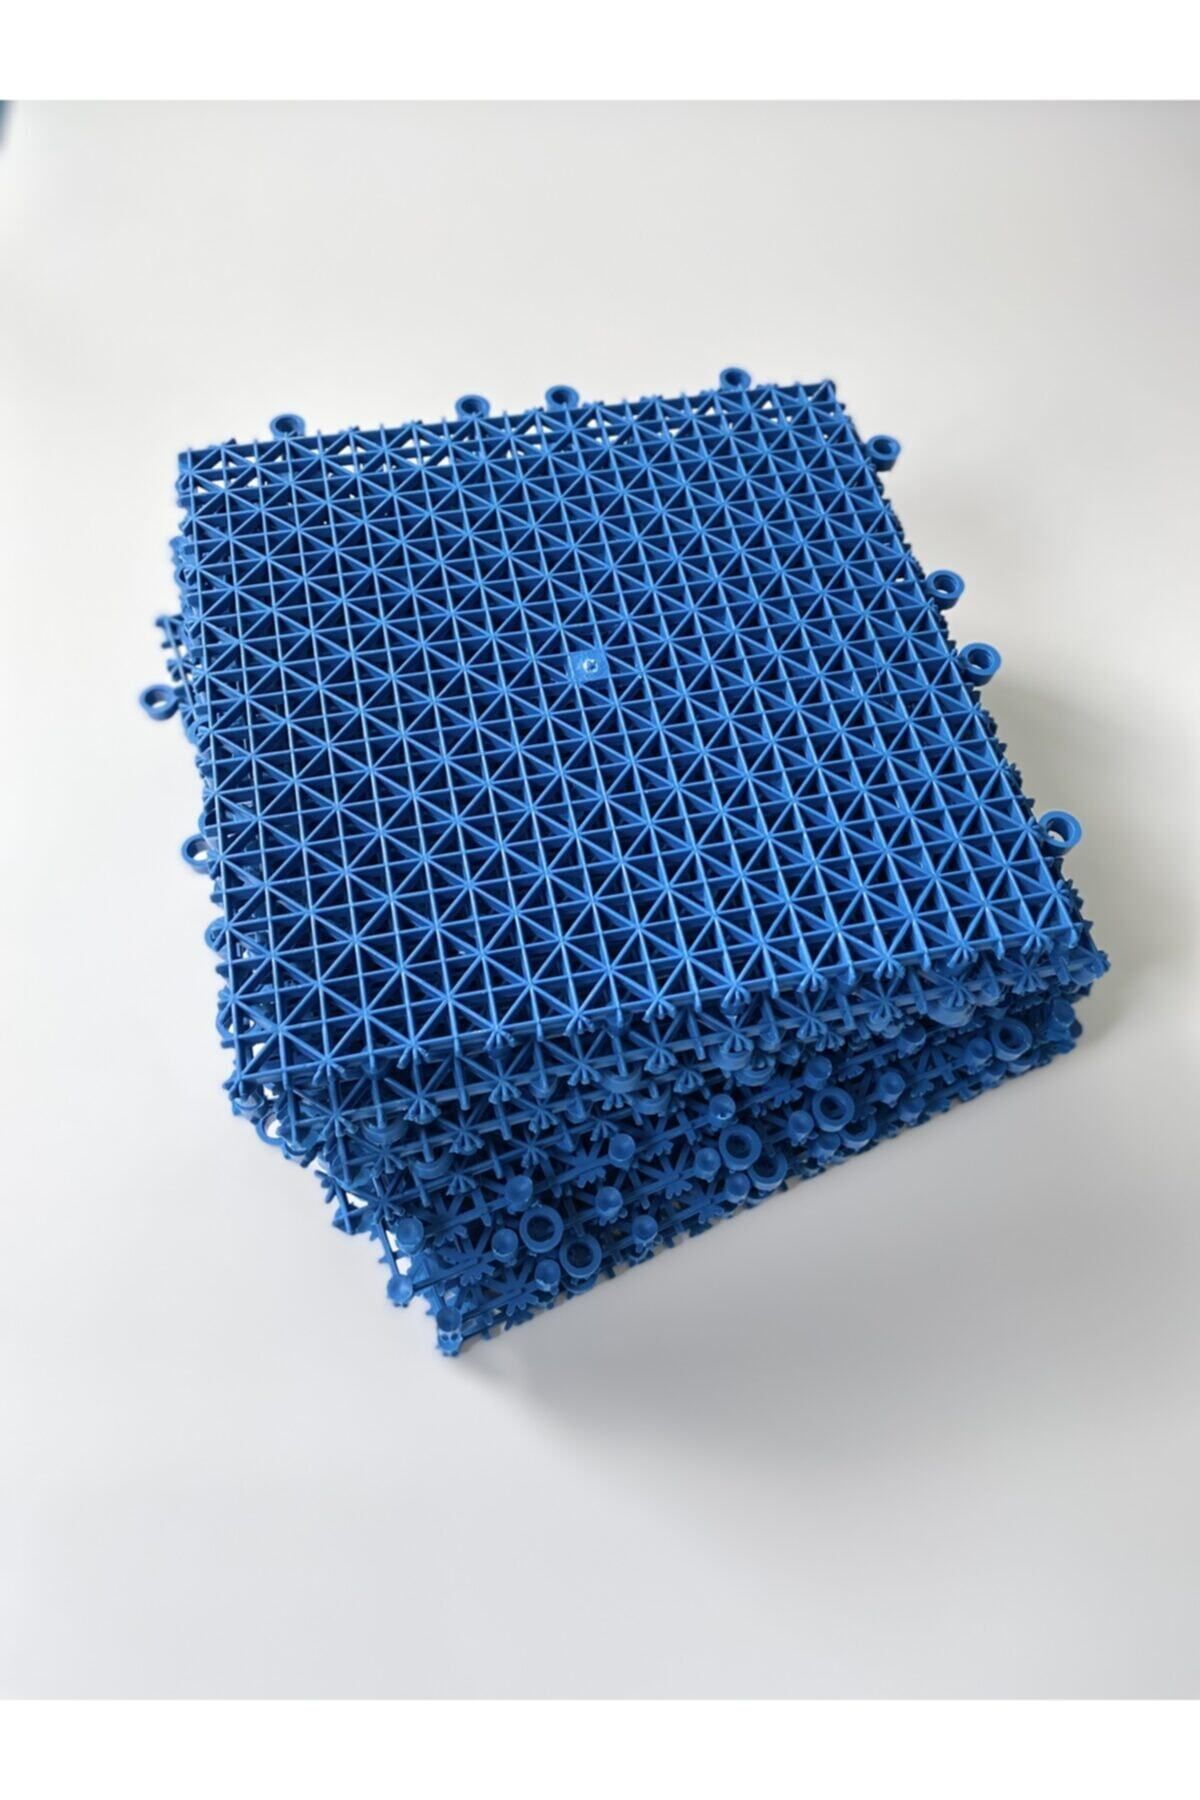 Gerçektrend Mavi, Plastik Kırılmaz Yer Karosu Zemin Kaplaması 1 M2 ( 16 Adet ) 25 X 25 Cm